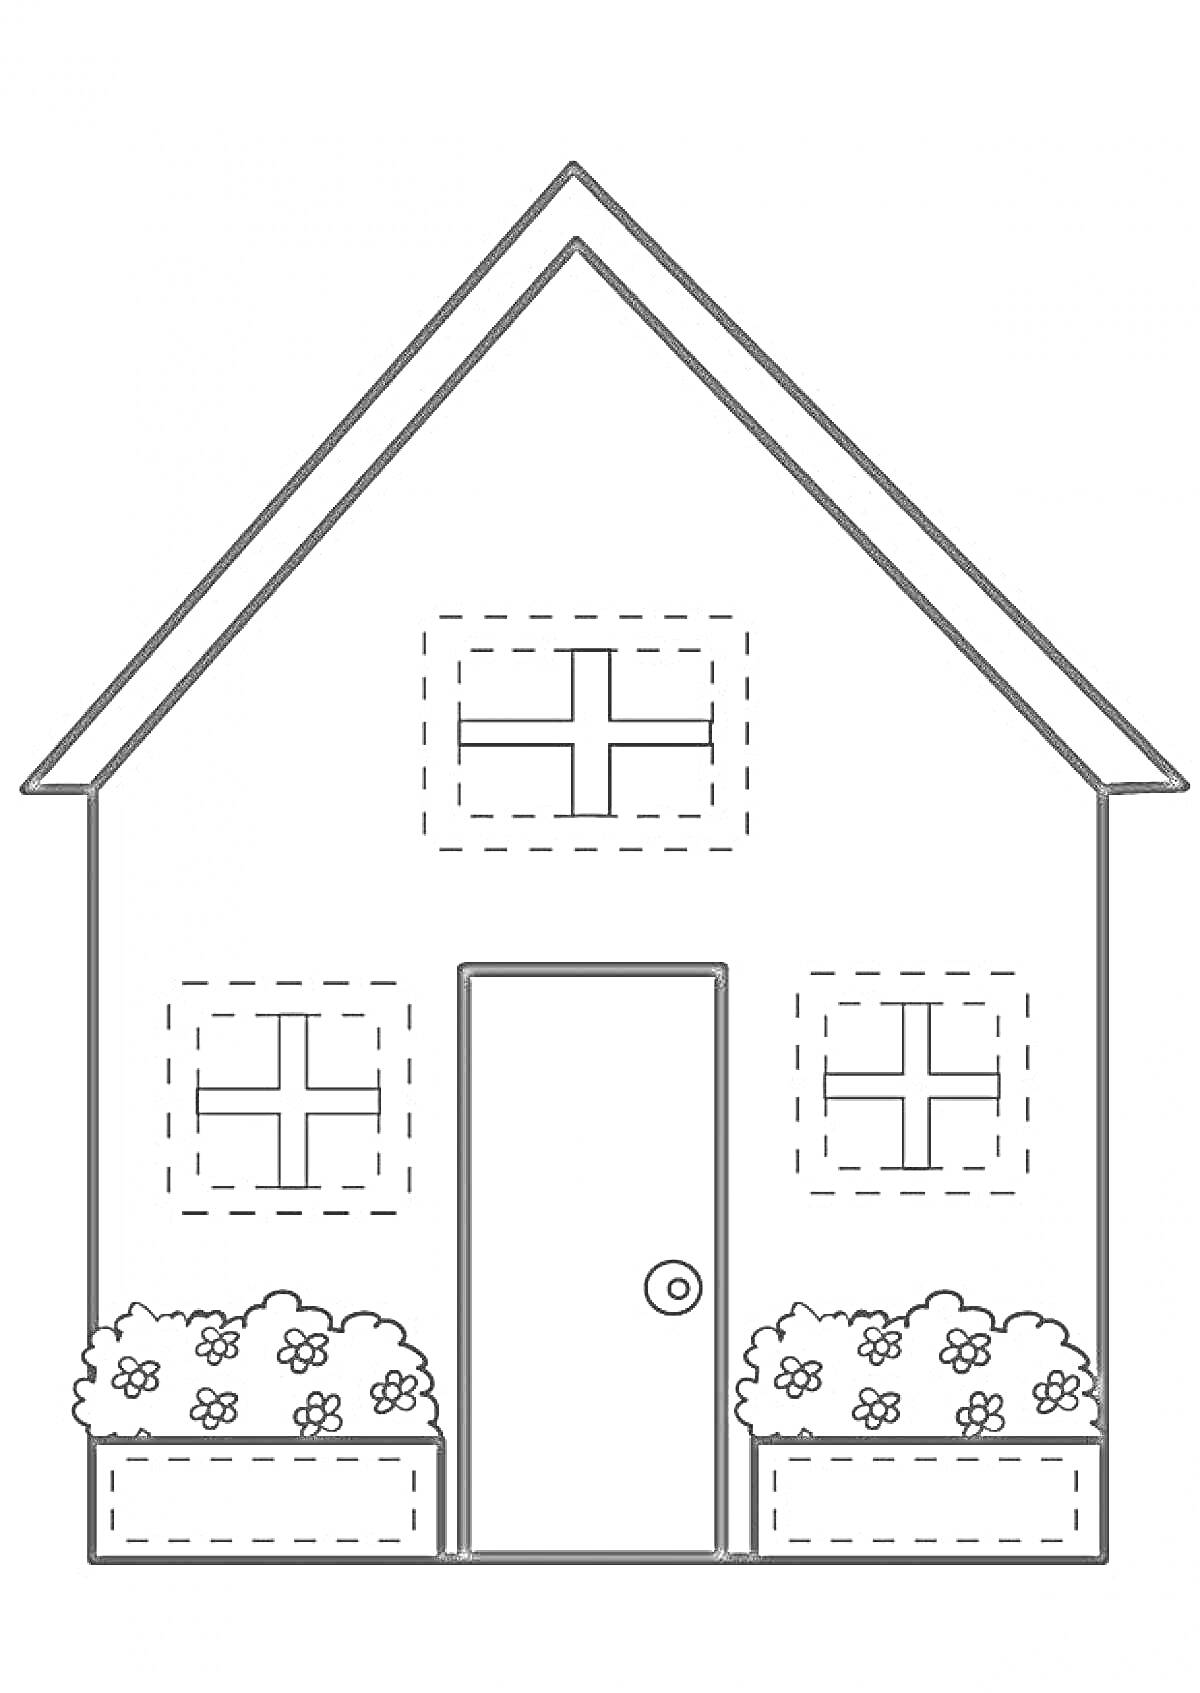 Домик с тремя окнами, дверью и клумбами